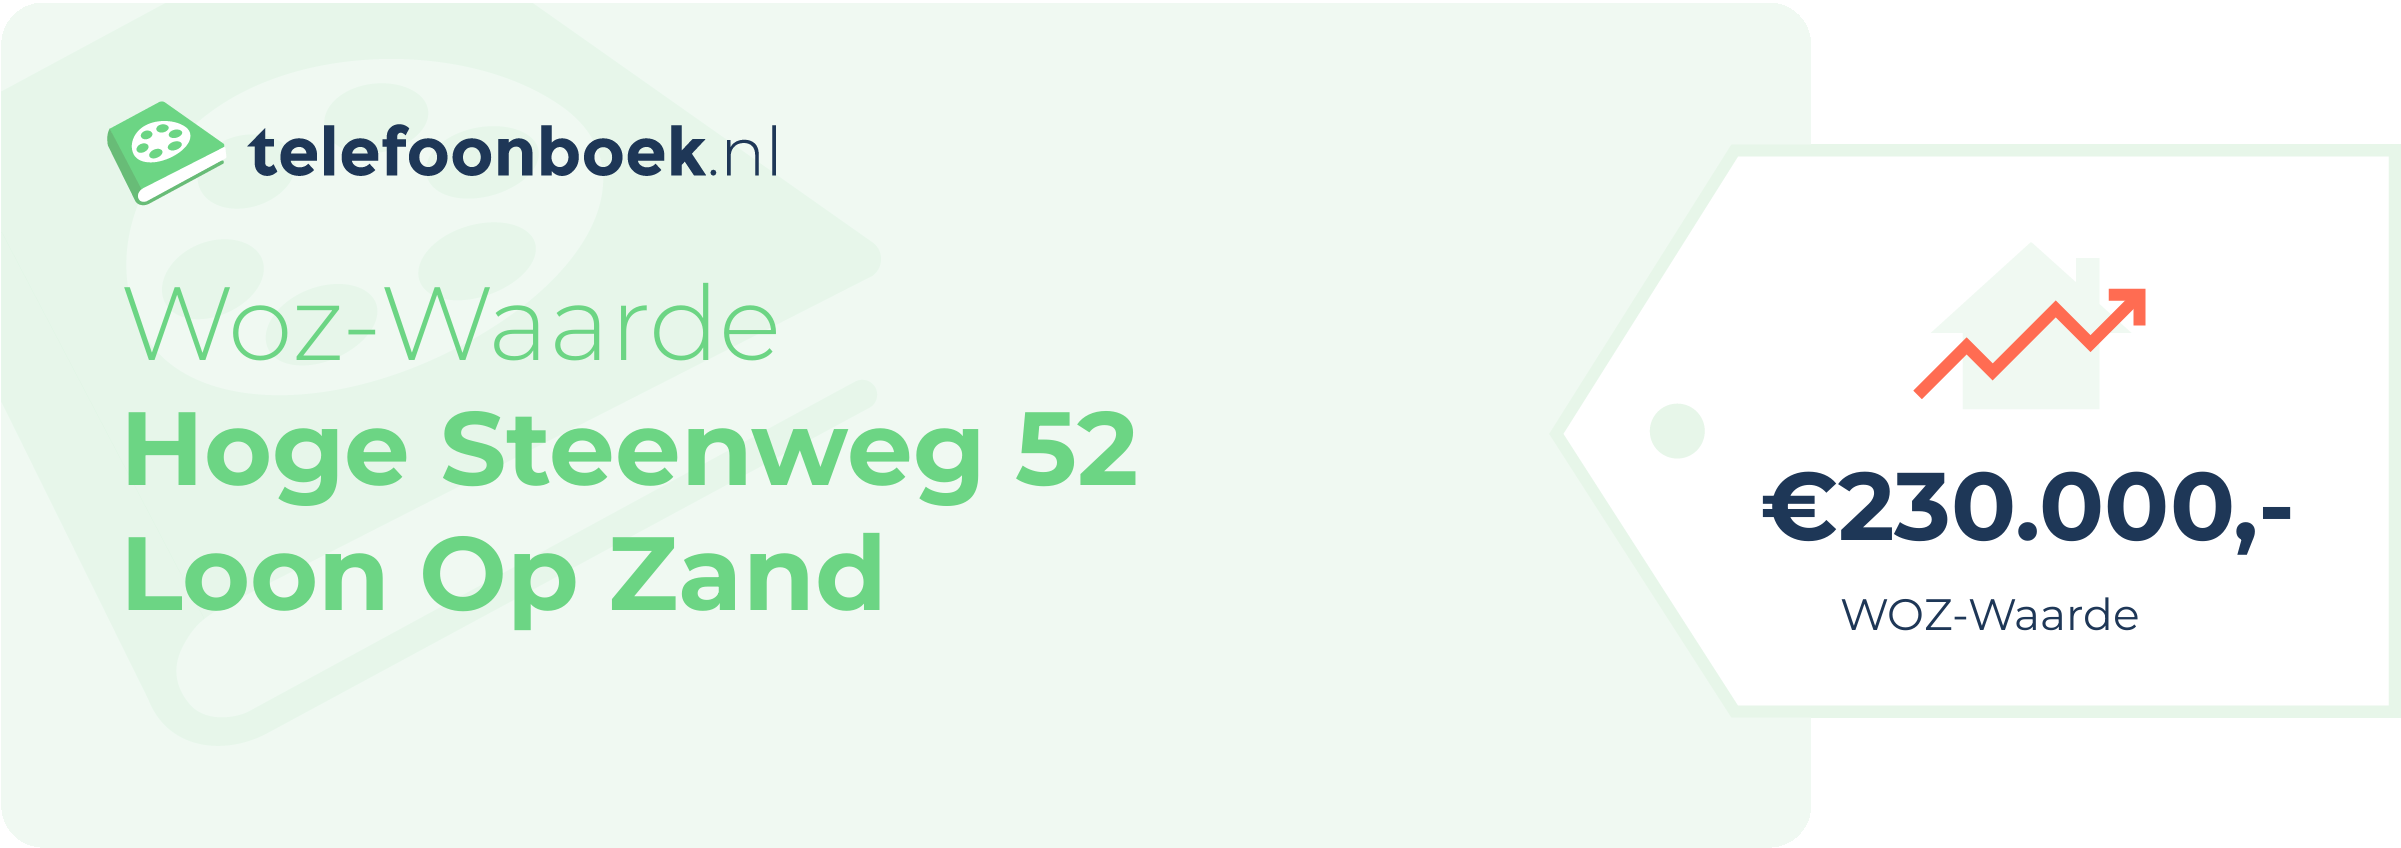 WOZ-waarde Hoge Steenweg 52 Loon Op Zand